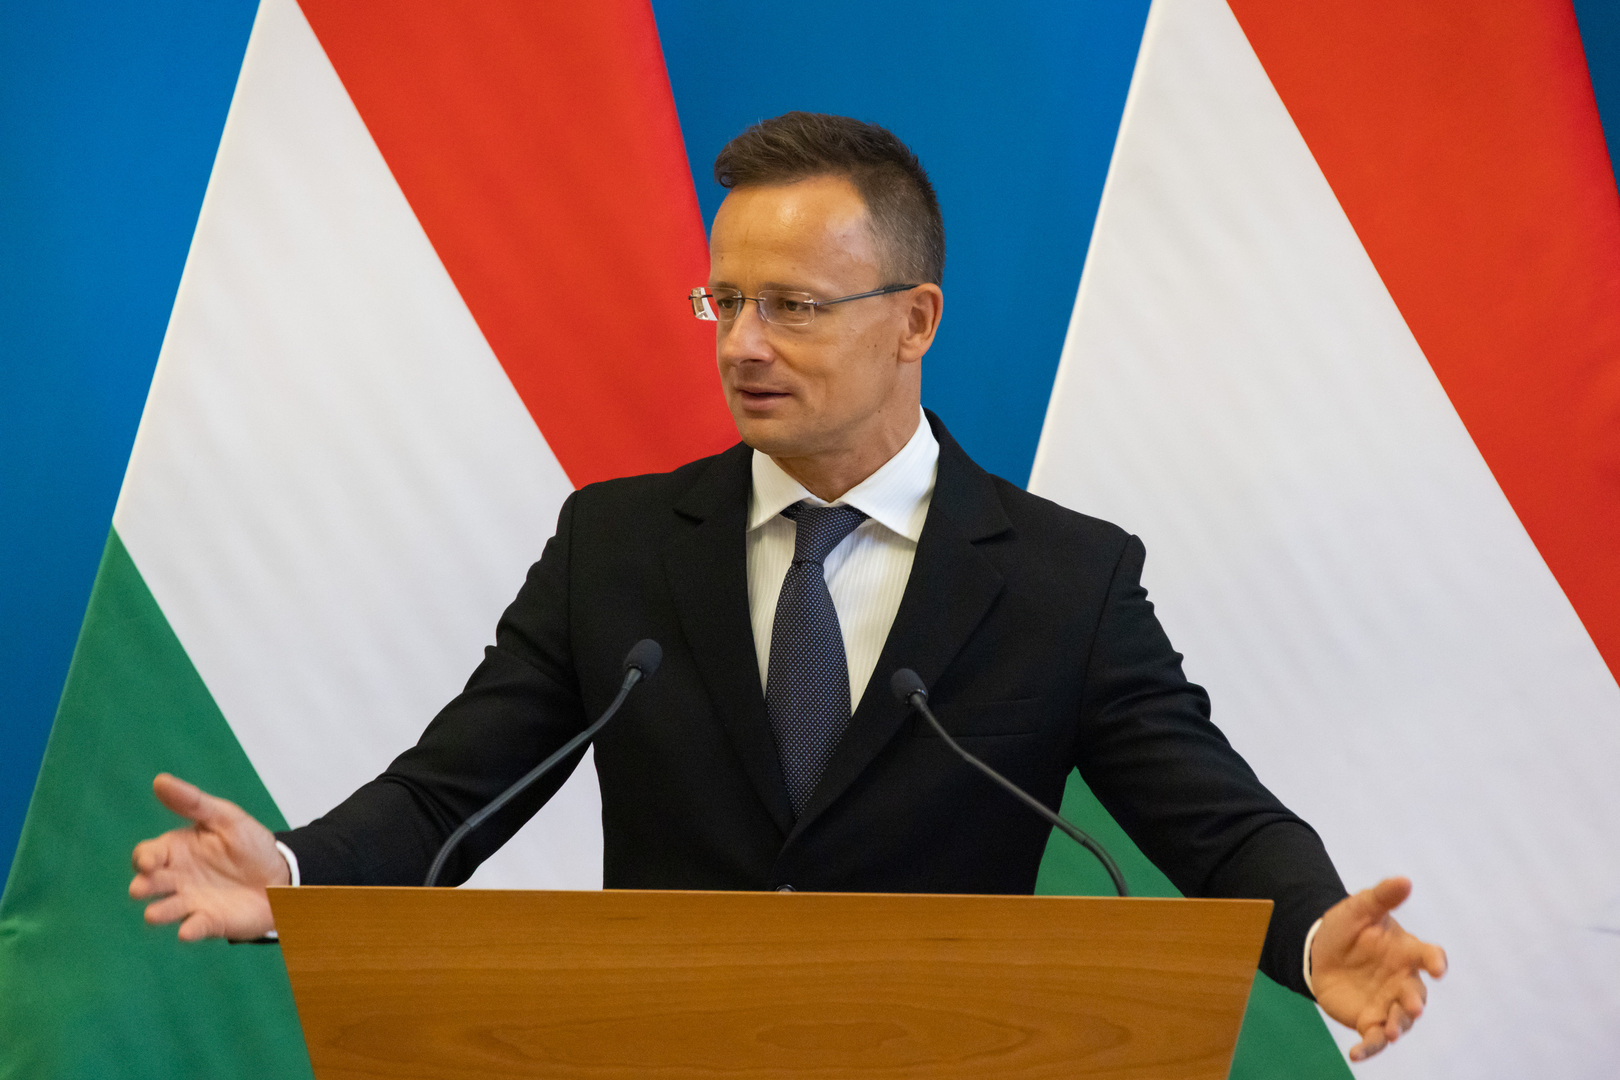 هنغاريا: وزراء الطاقة الأوروبيون فشلوا في الاتفاق على سقف أسعار الغاز